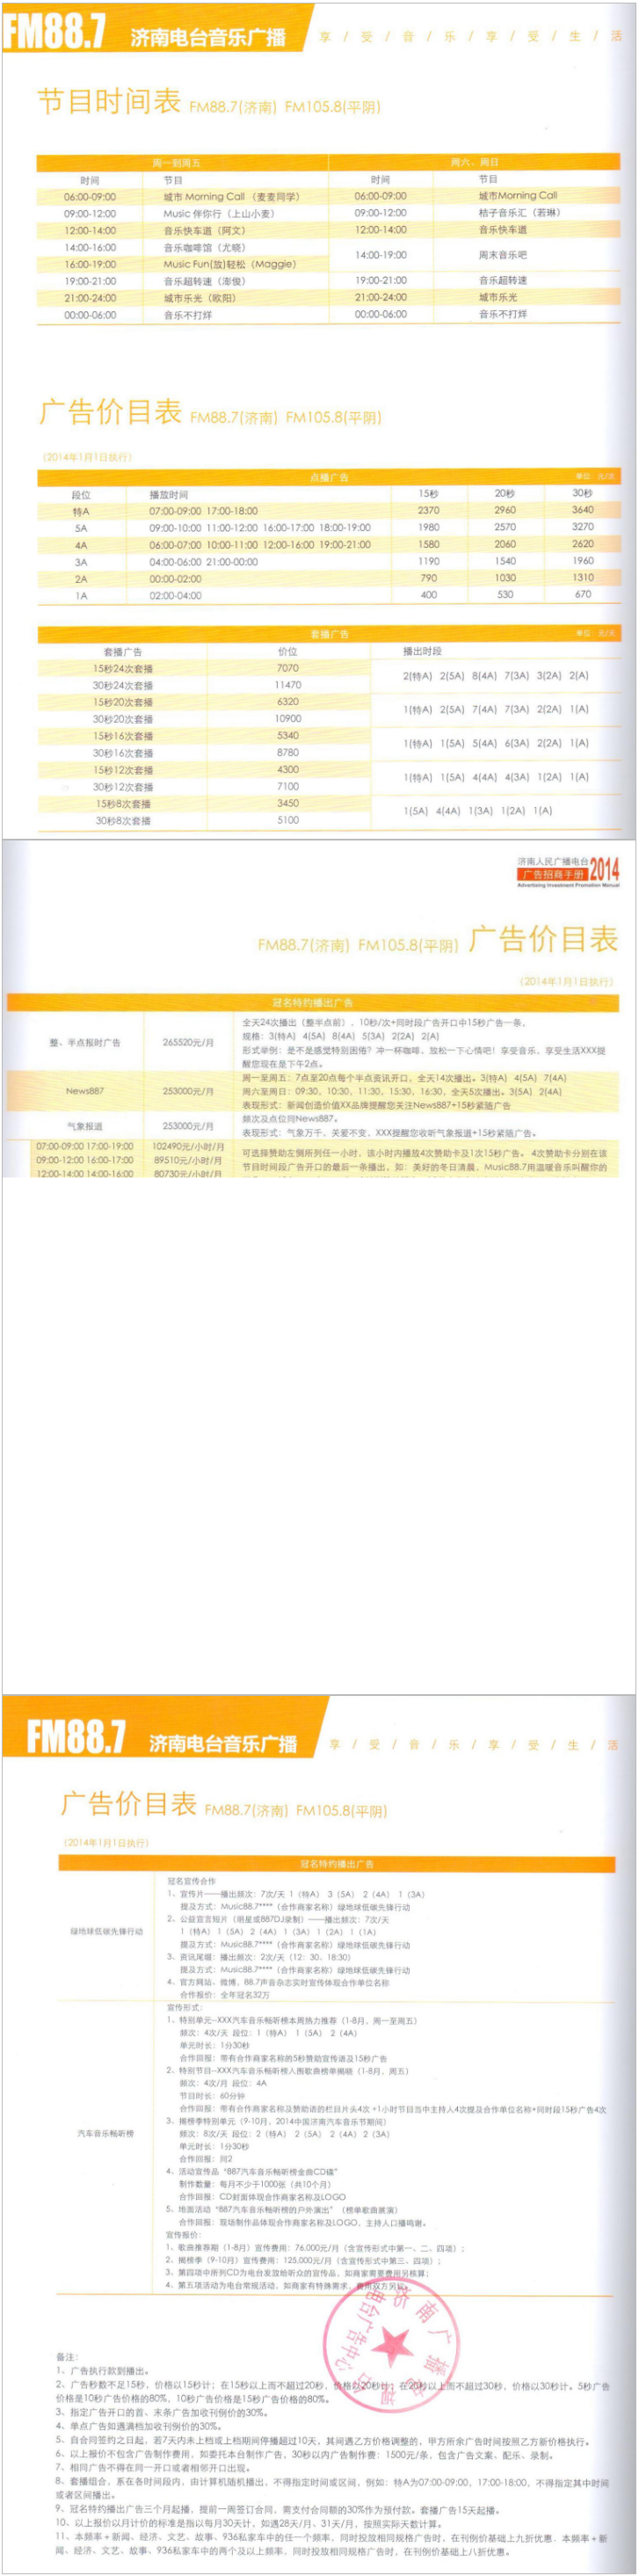 2014济南人民广播电台音乐广播FM88.7广告报价表.png